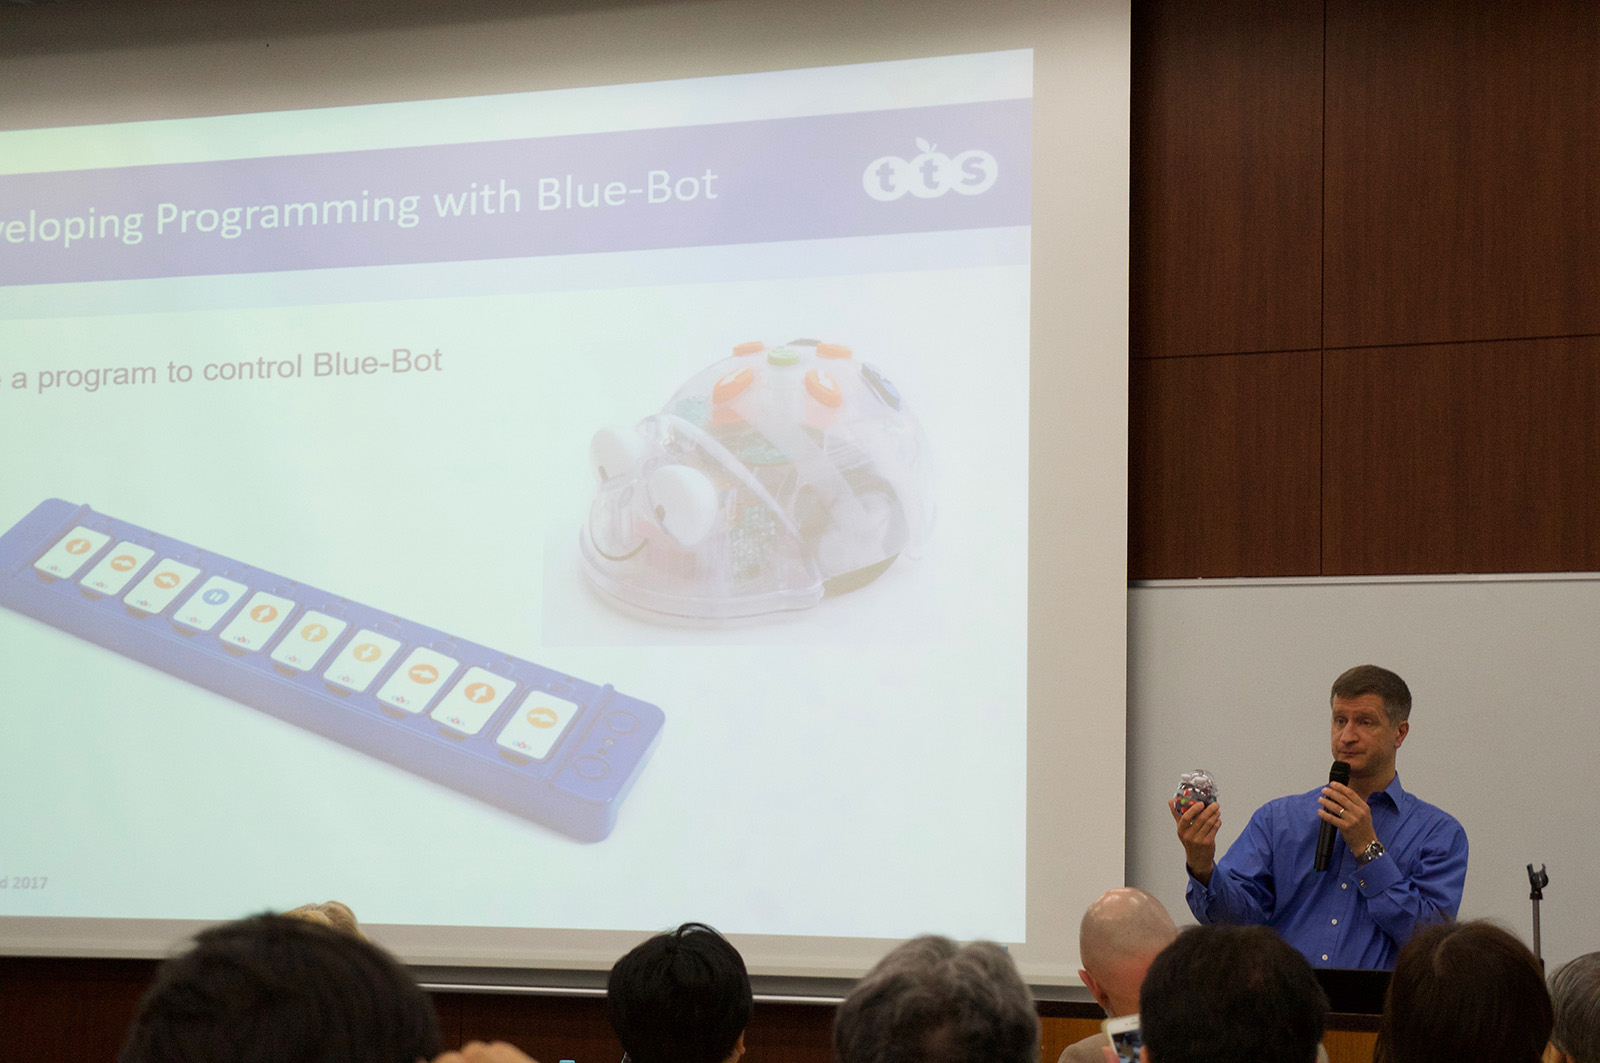 同じシリーズのBlue-Botは、単体でも使用できるが、Bluetoothで専用のプログラミング用ボードやタブレットと接続し、ロボット外からプログラミングすることができる